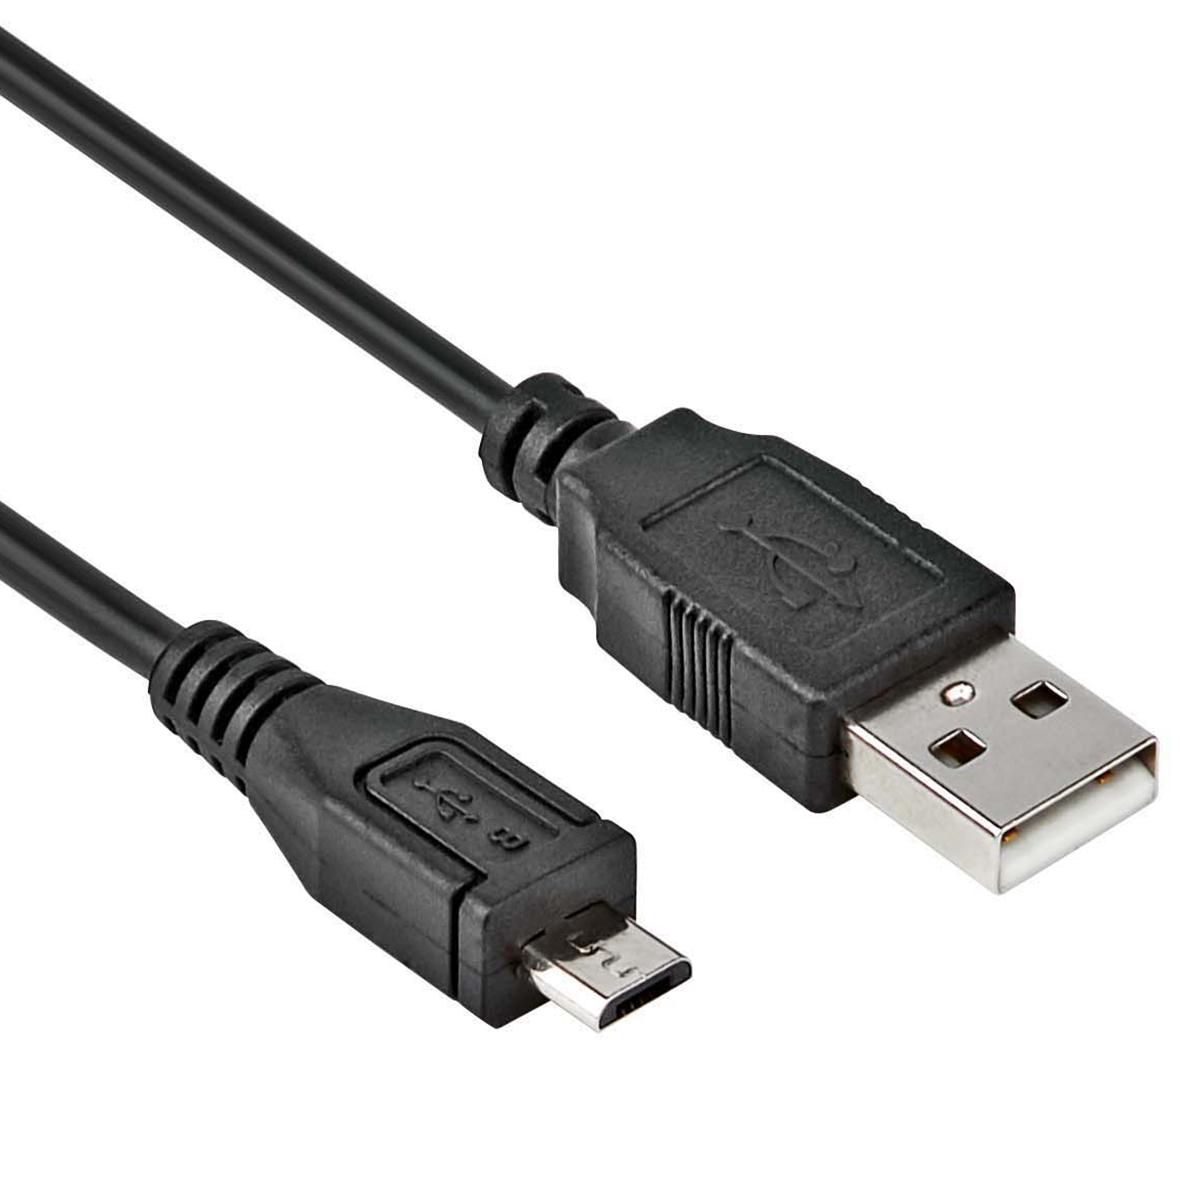 USB Micro B datakabel - Allteq